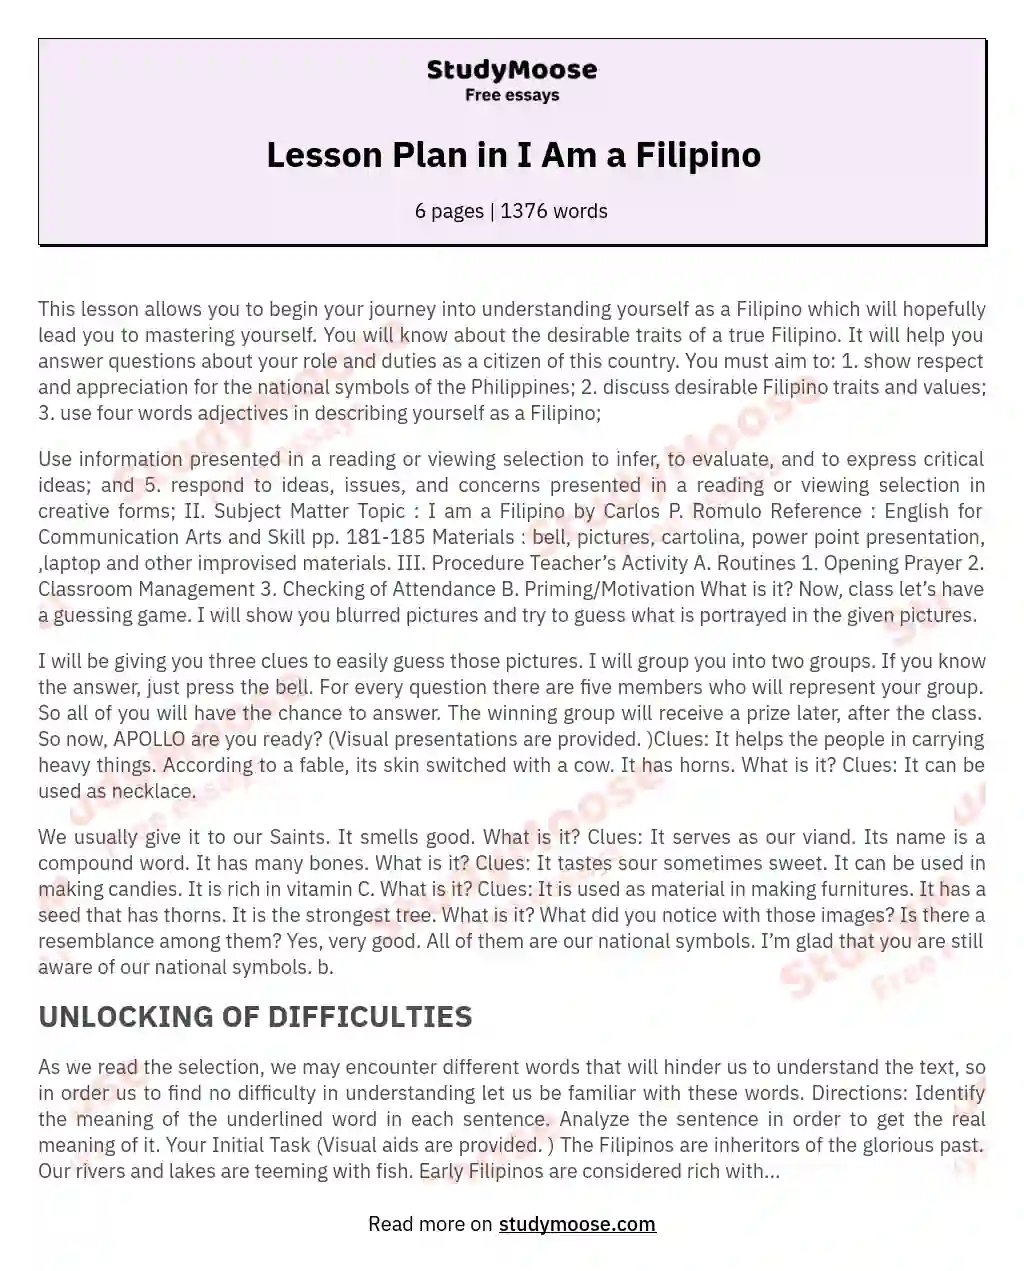 Lesson Plan in I Am a Filipino essay